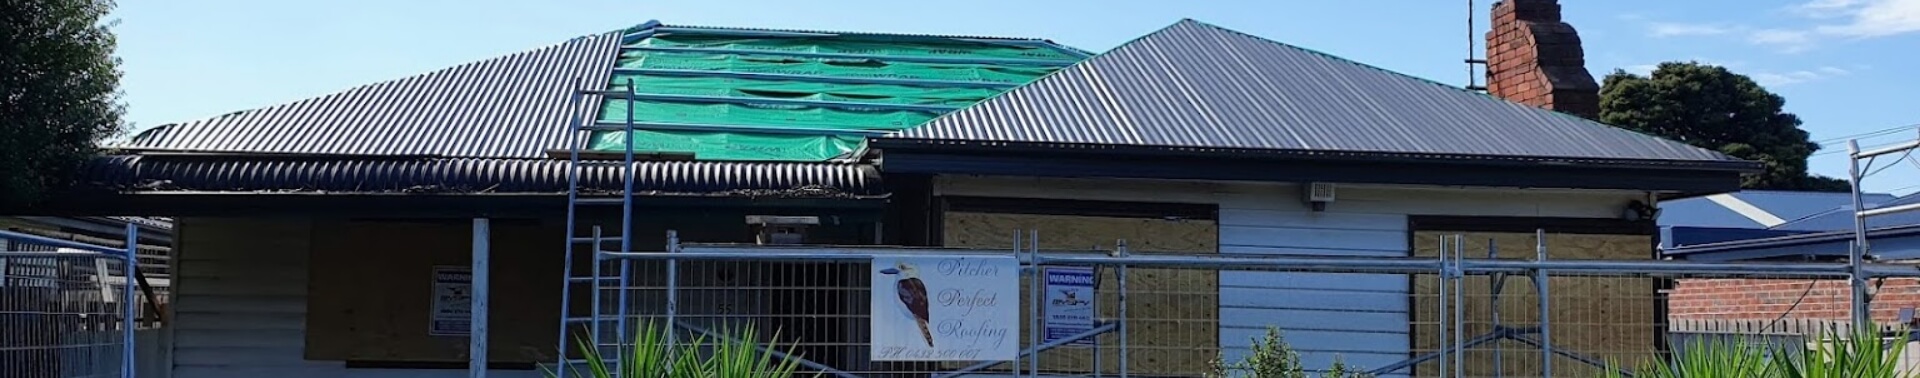 roof-repair-banner